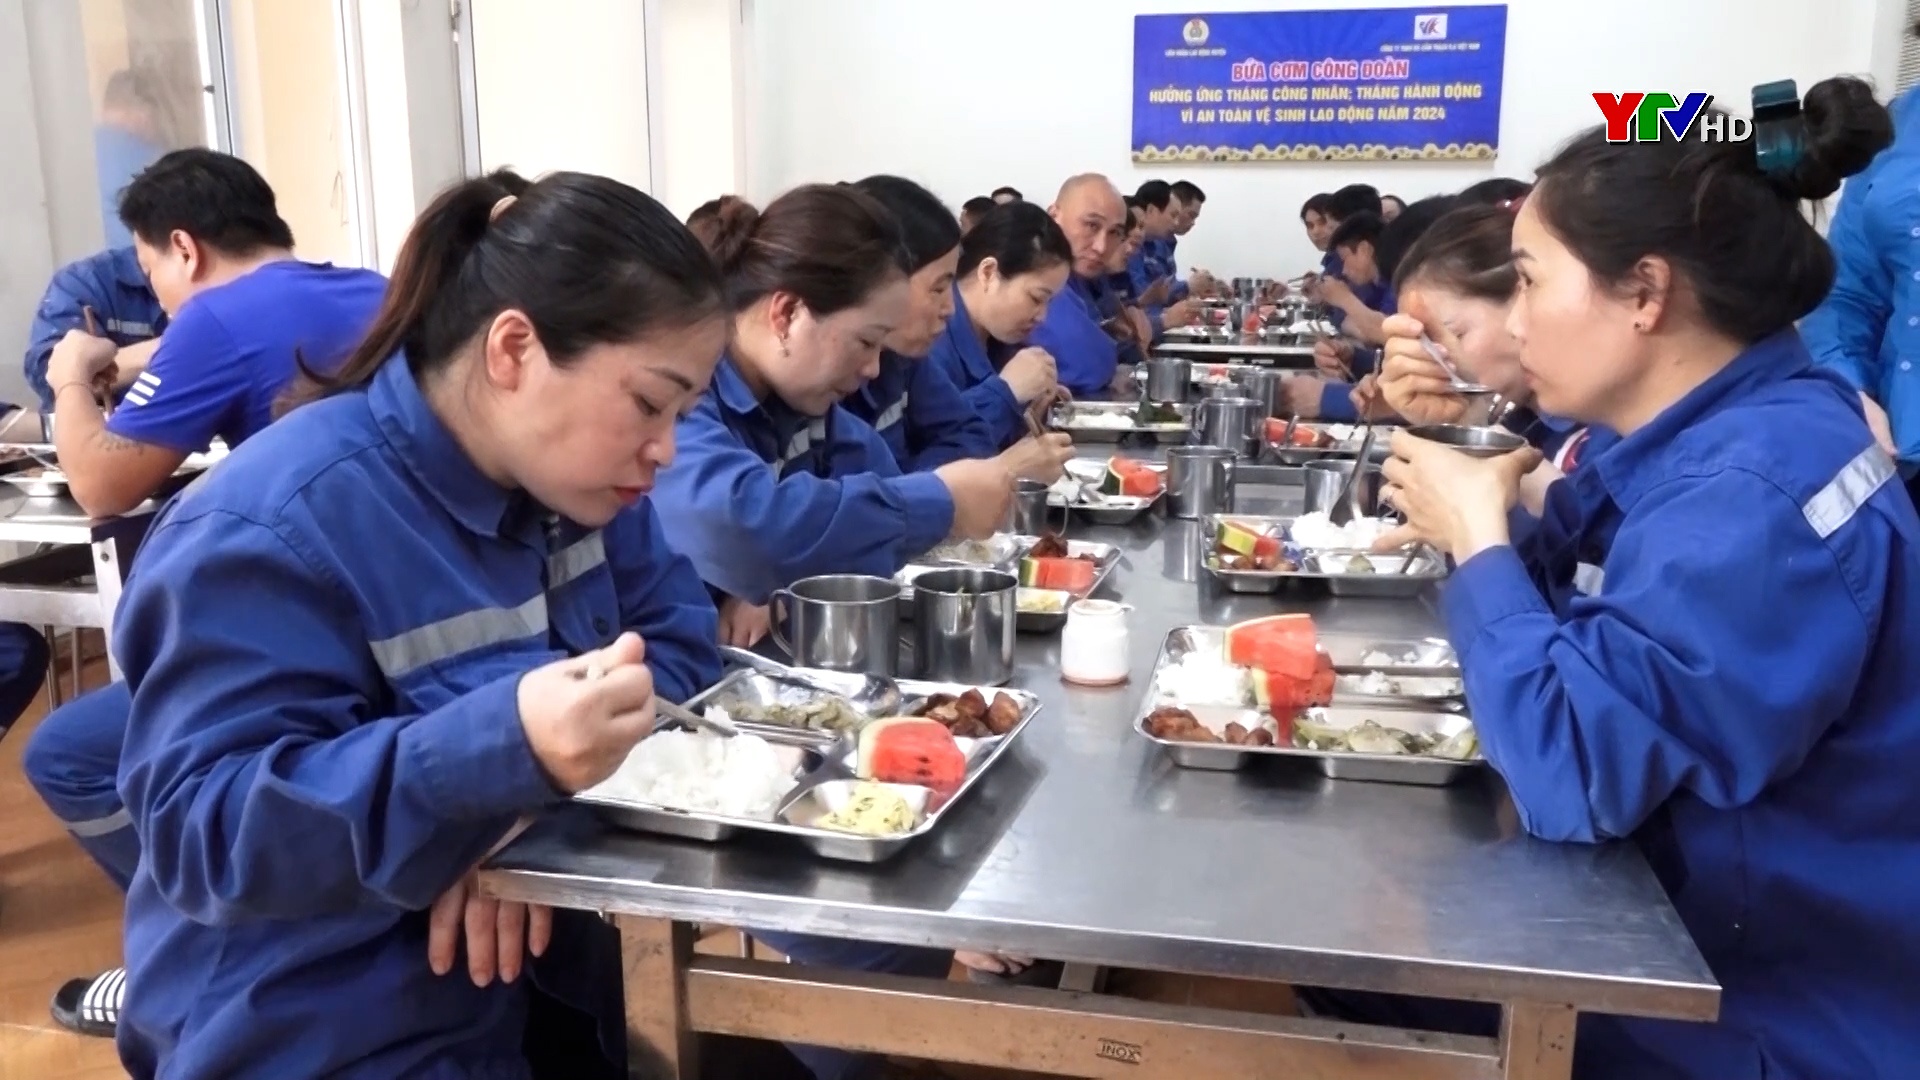 Lục Yên: Những “Bữa cơm công đoàn” cho đoàn viên, người lao động